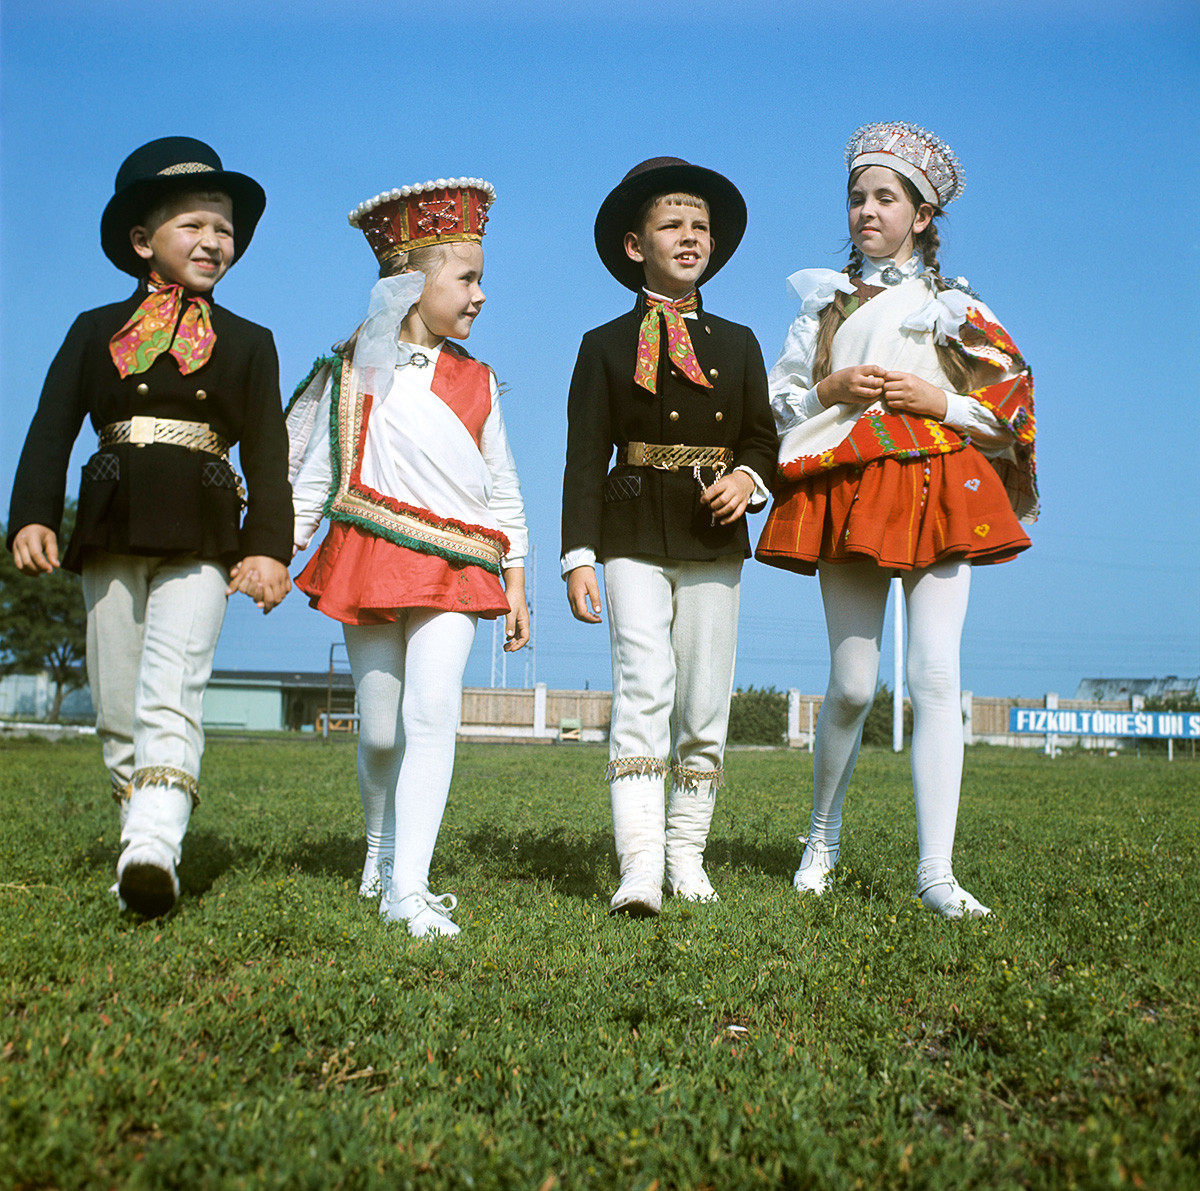 Feiernde auf dem Lied- und Tanzfestival in Riga, 1970